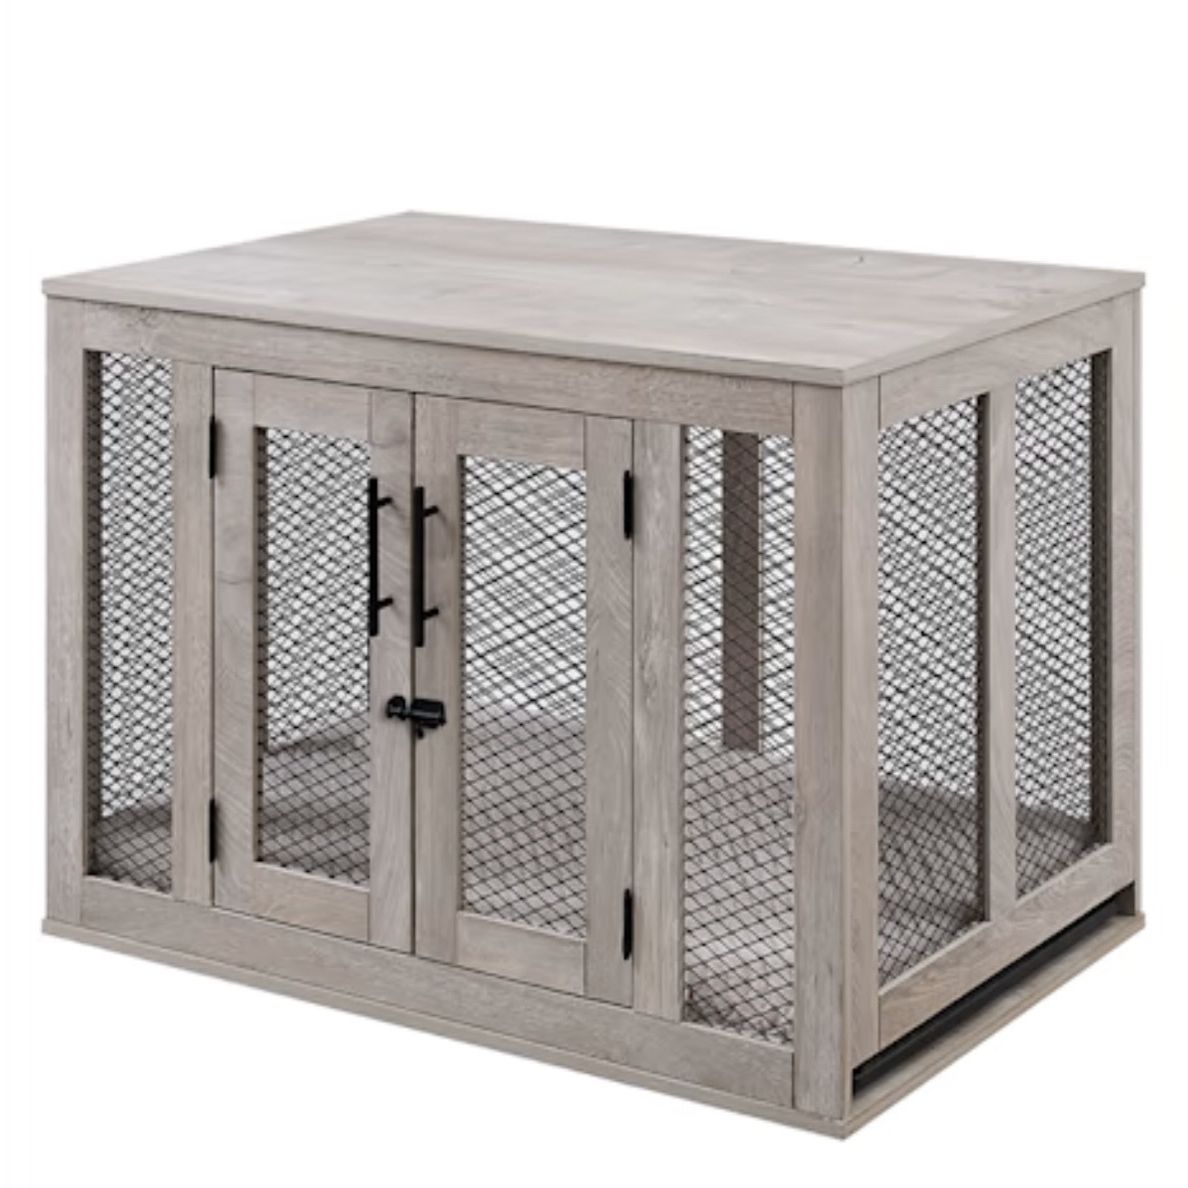 Dog Crate - 37” L X 24” W X 26” H